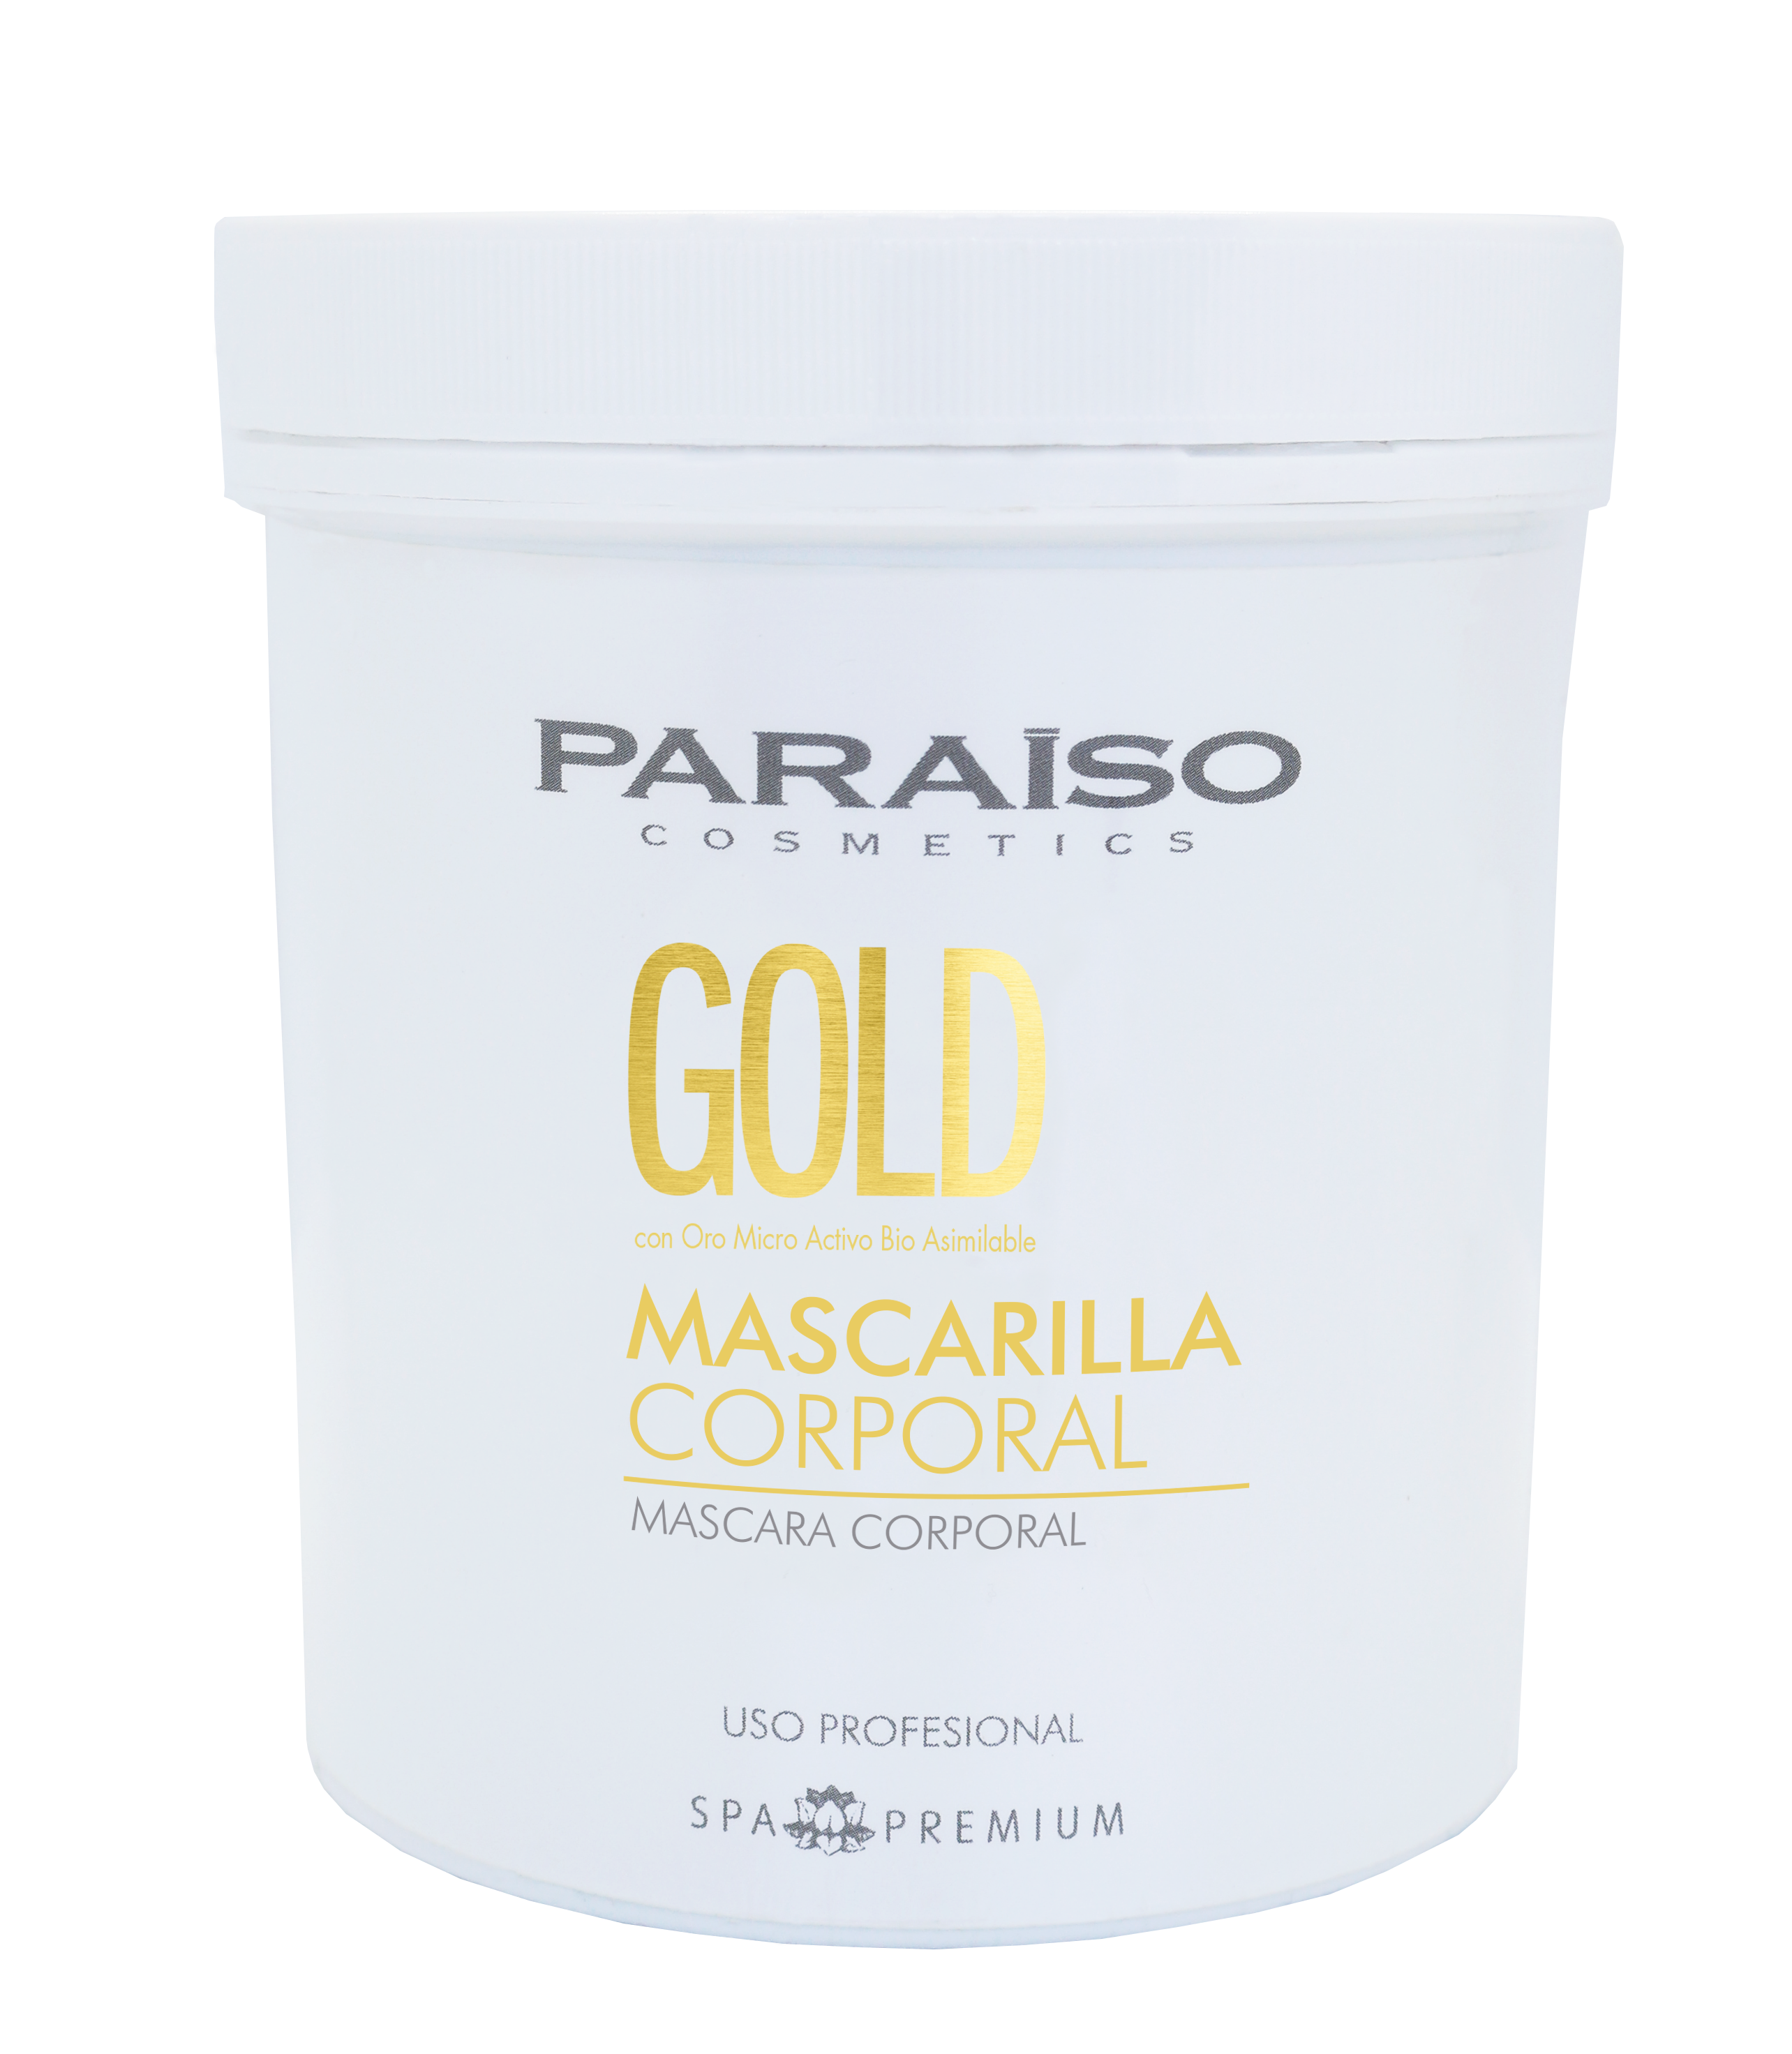 Mascarilla Corporal Gold